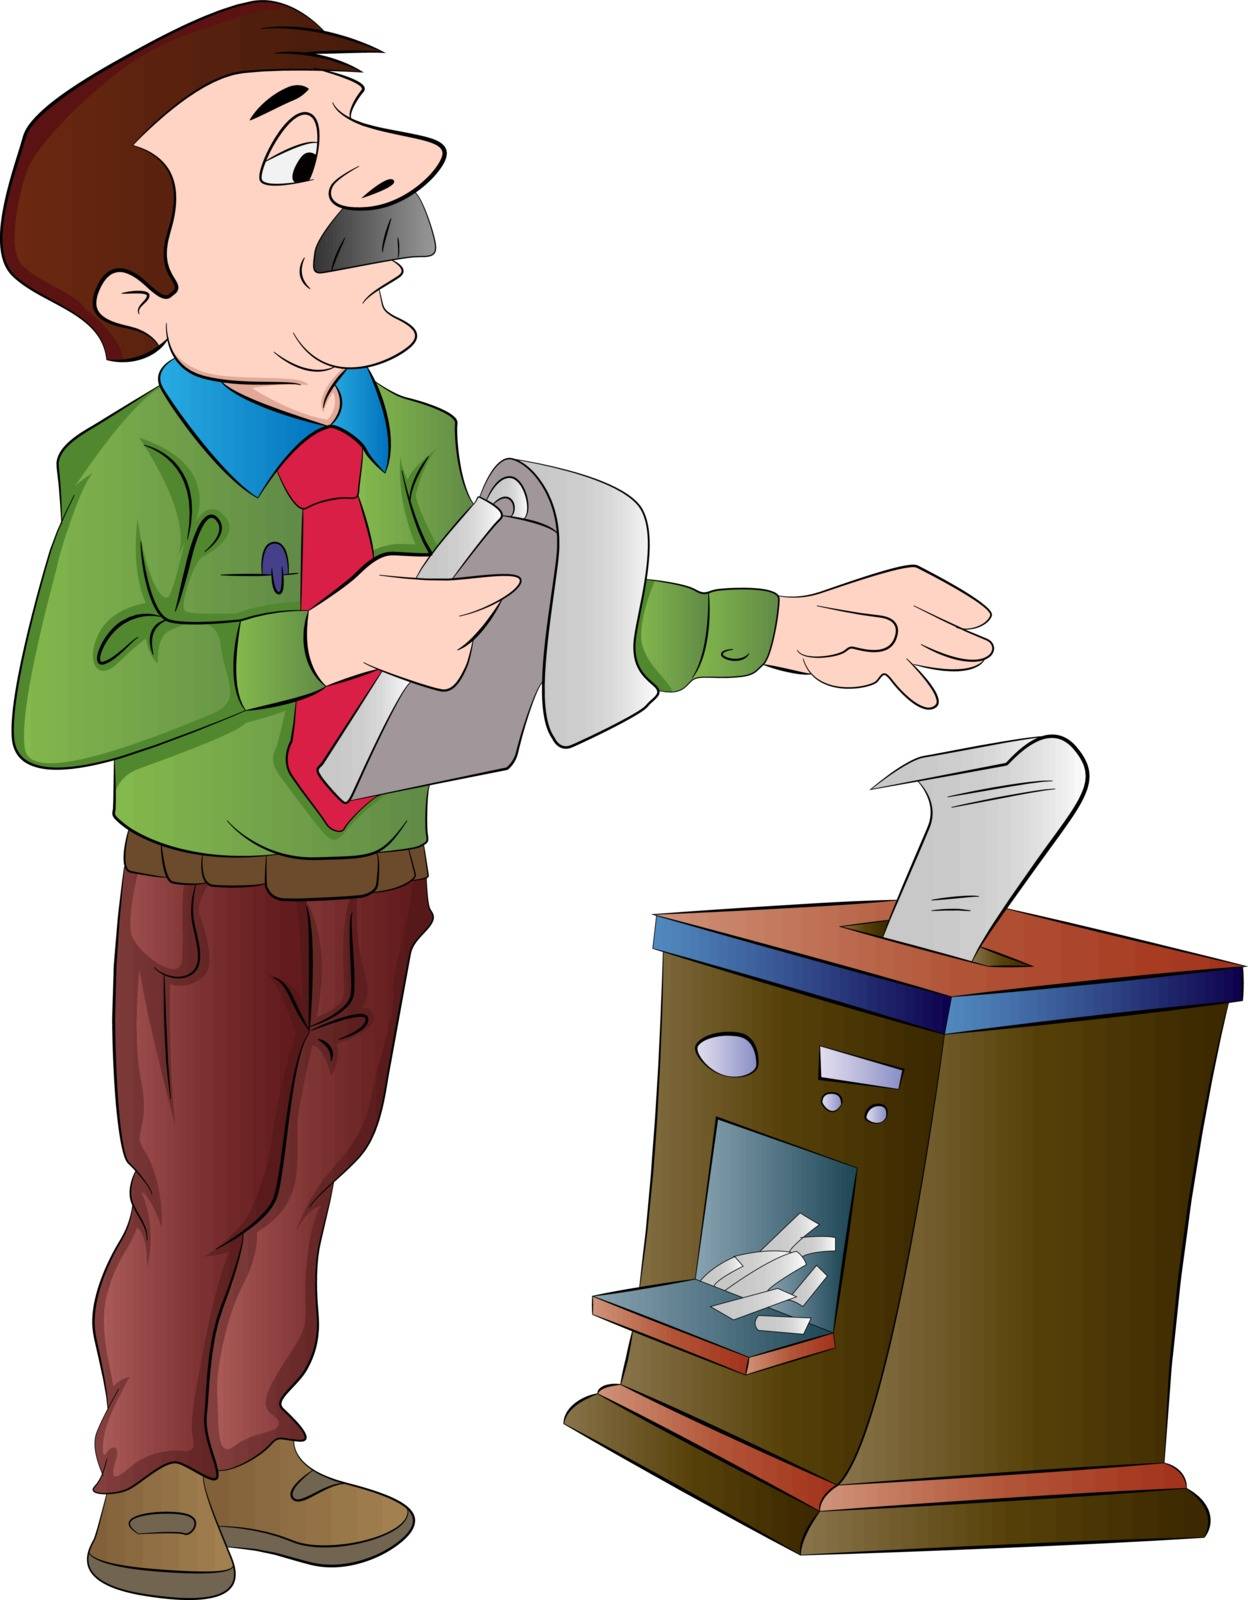 Man Shredding Documents, illustration by Morphart